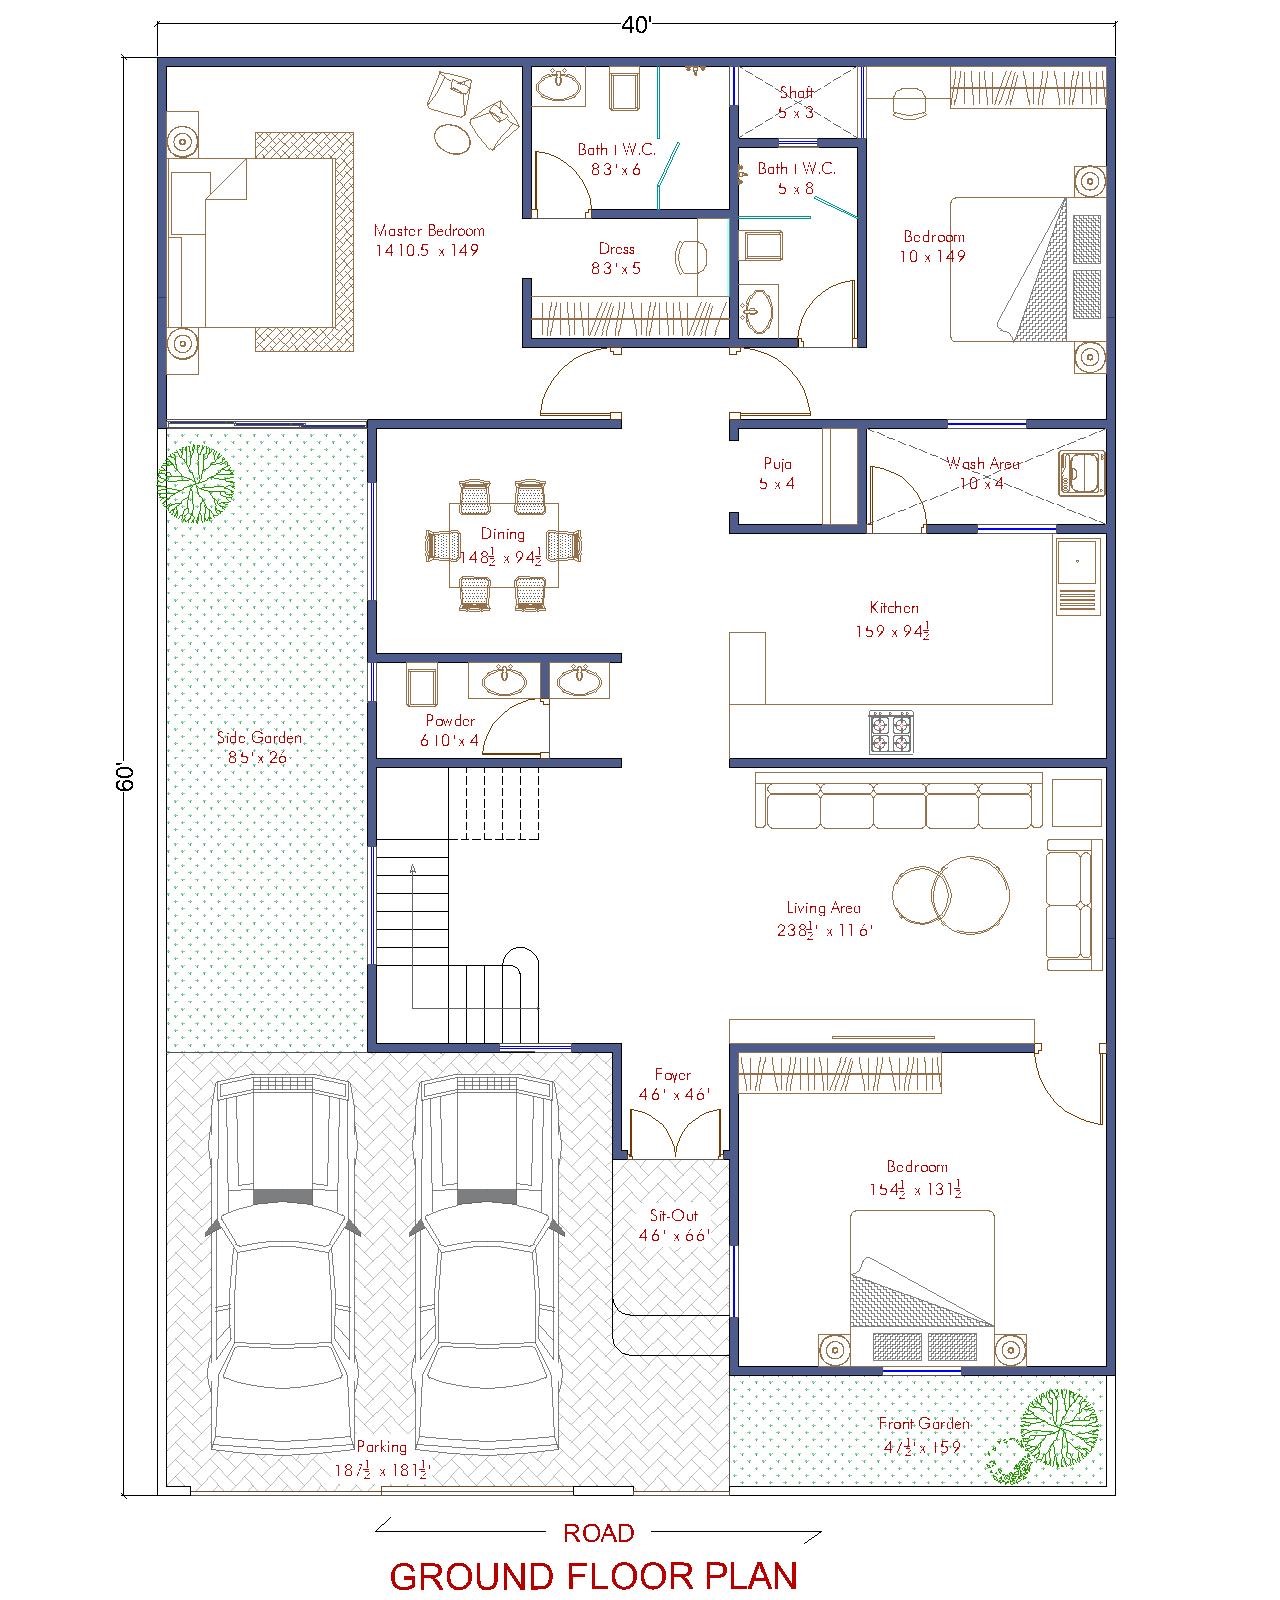 40x60 House Plan